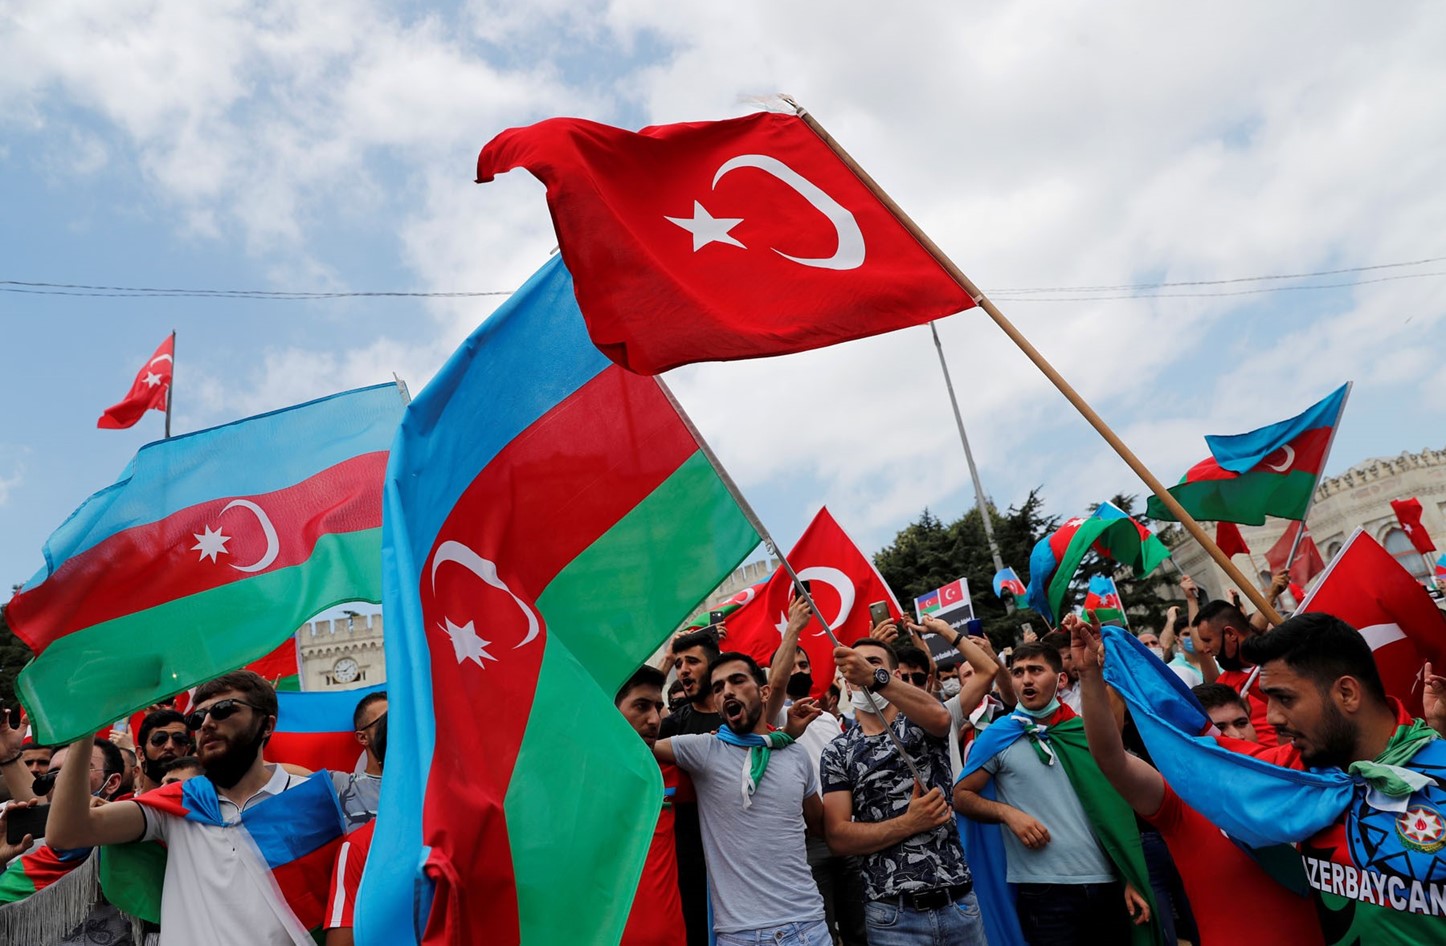 Azerbaiyan, brazo de Turquía